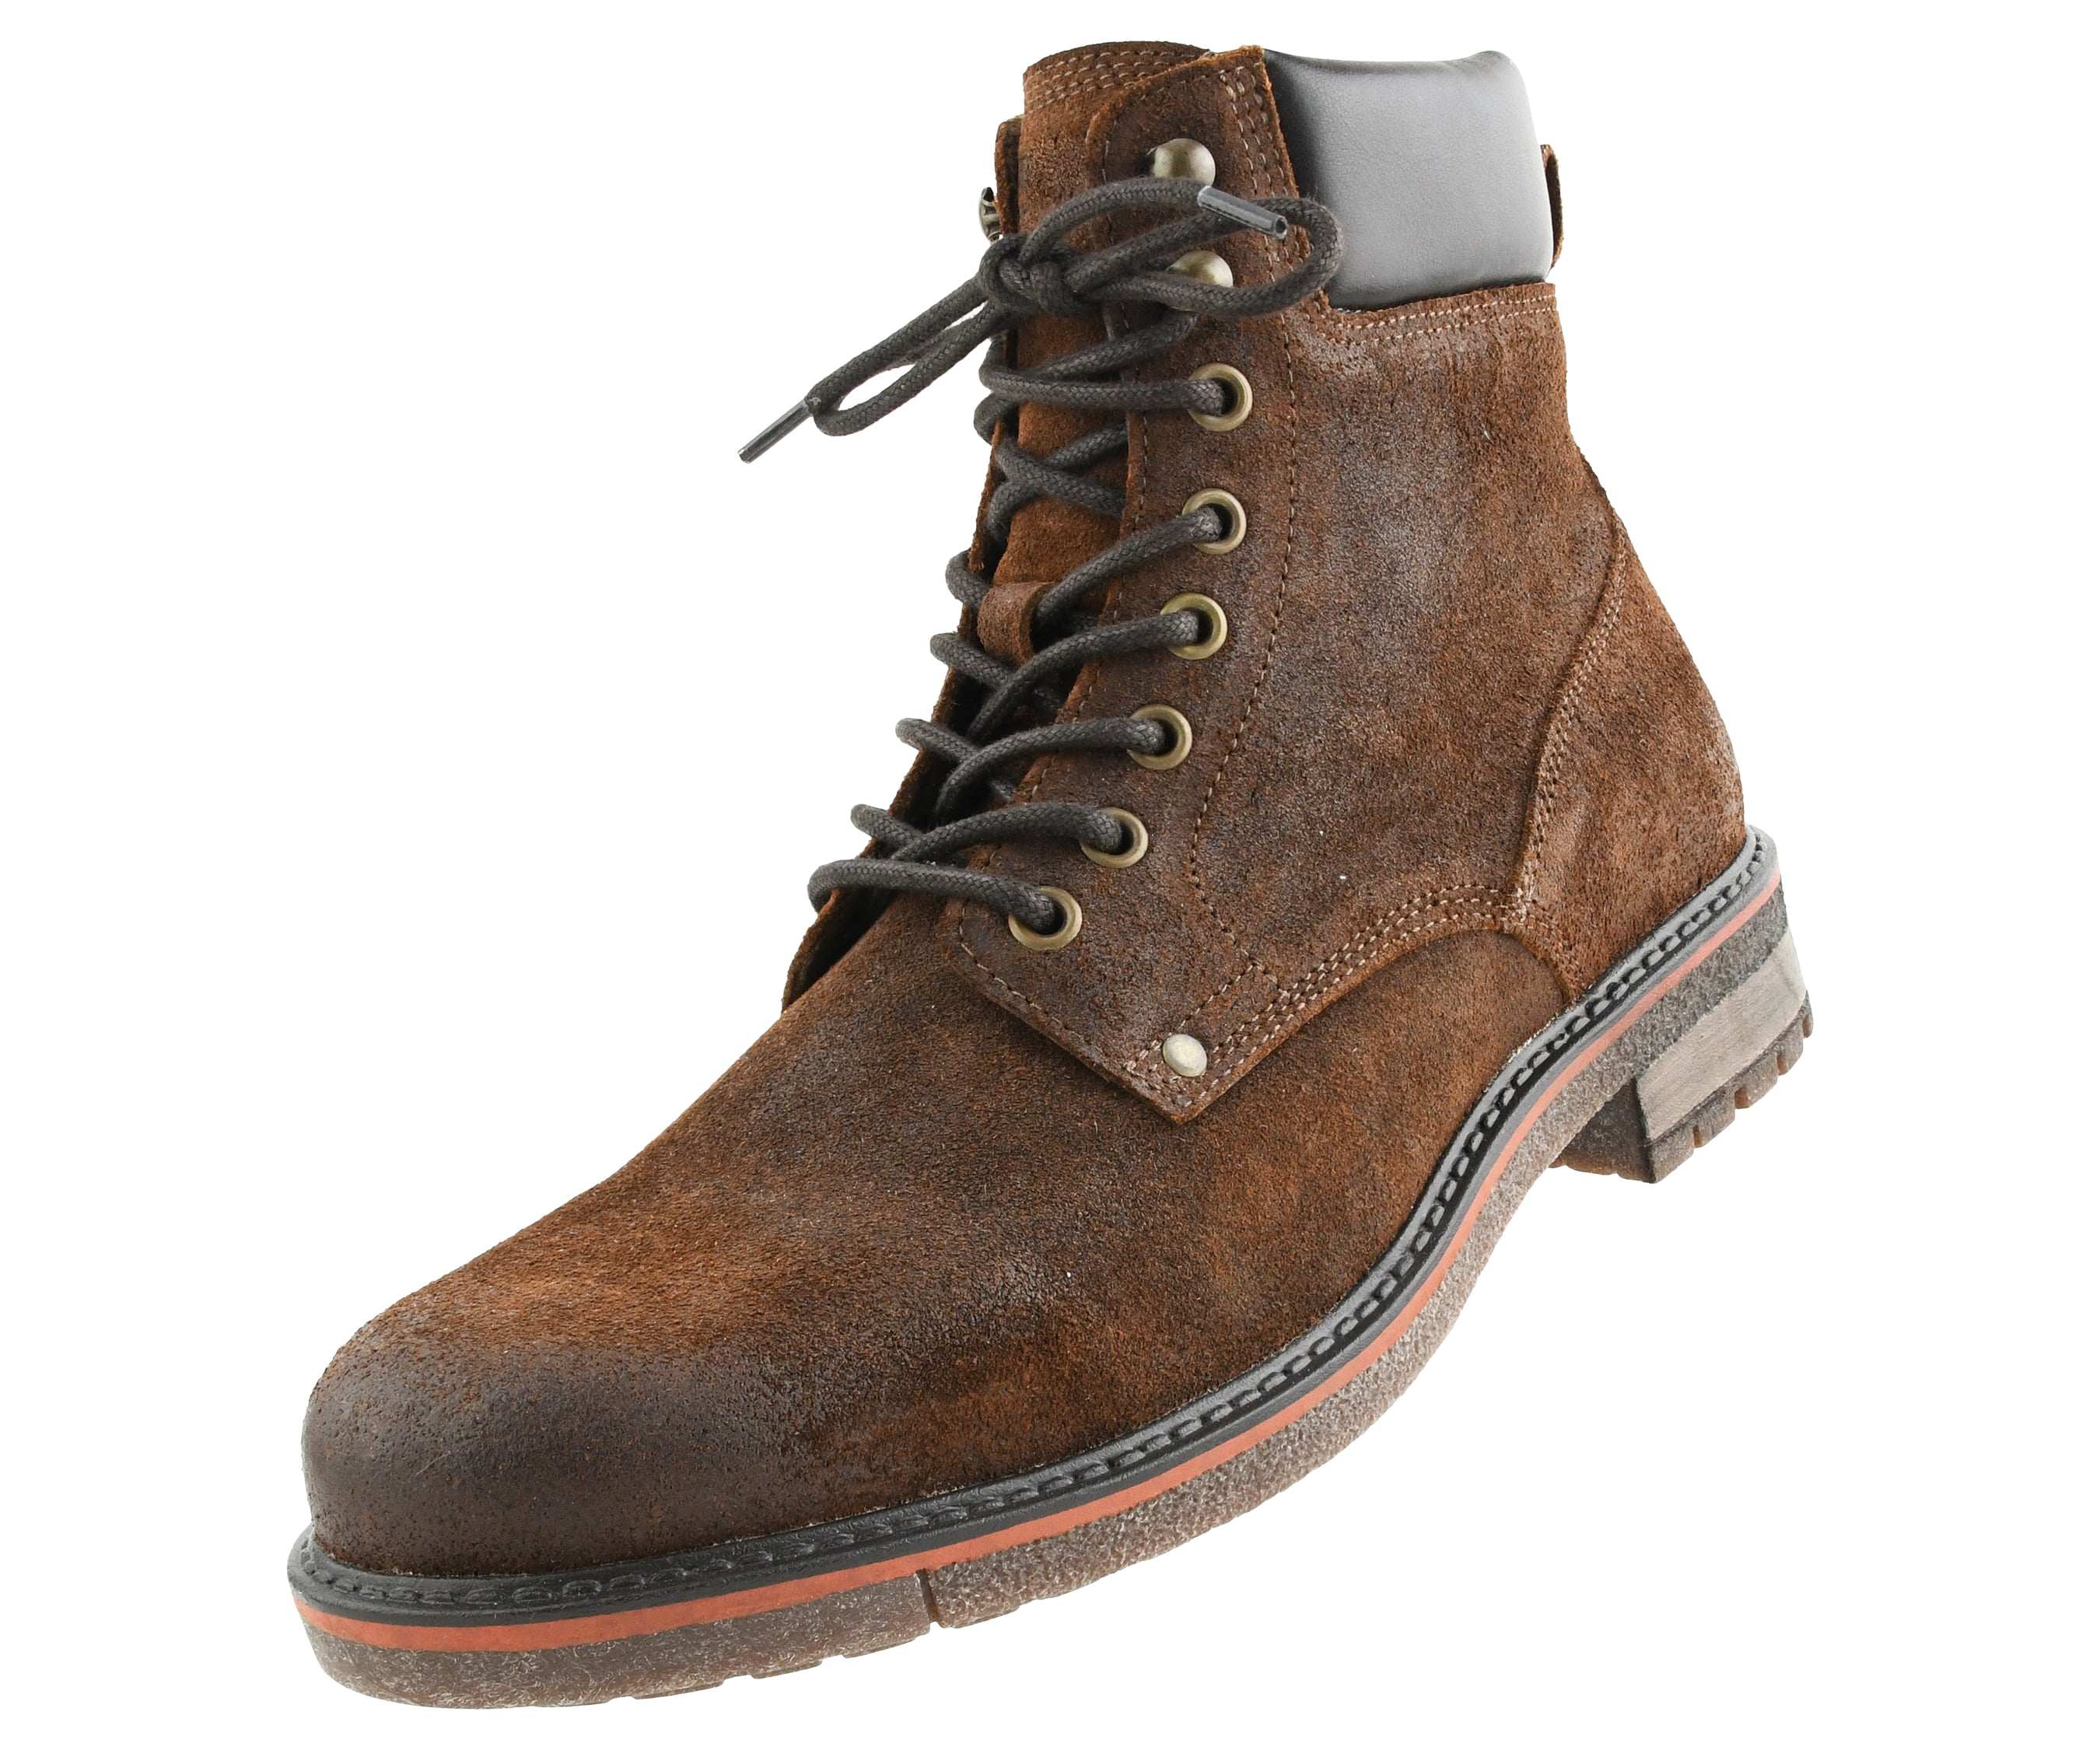 Details about   Mens Black Plain Grain Leather Classic Western Cowboy Boots Casual J Toe